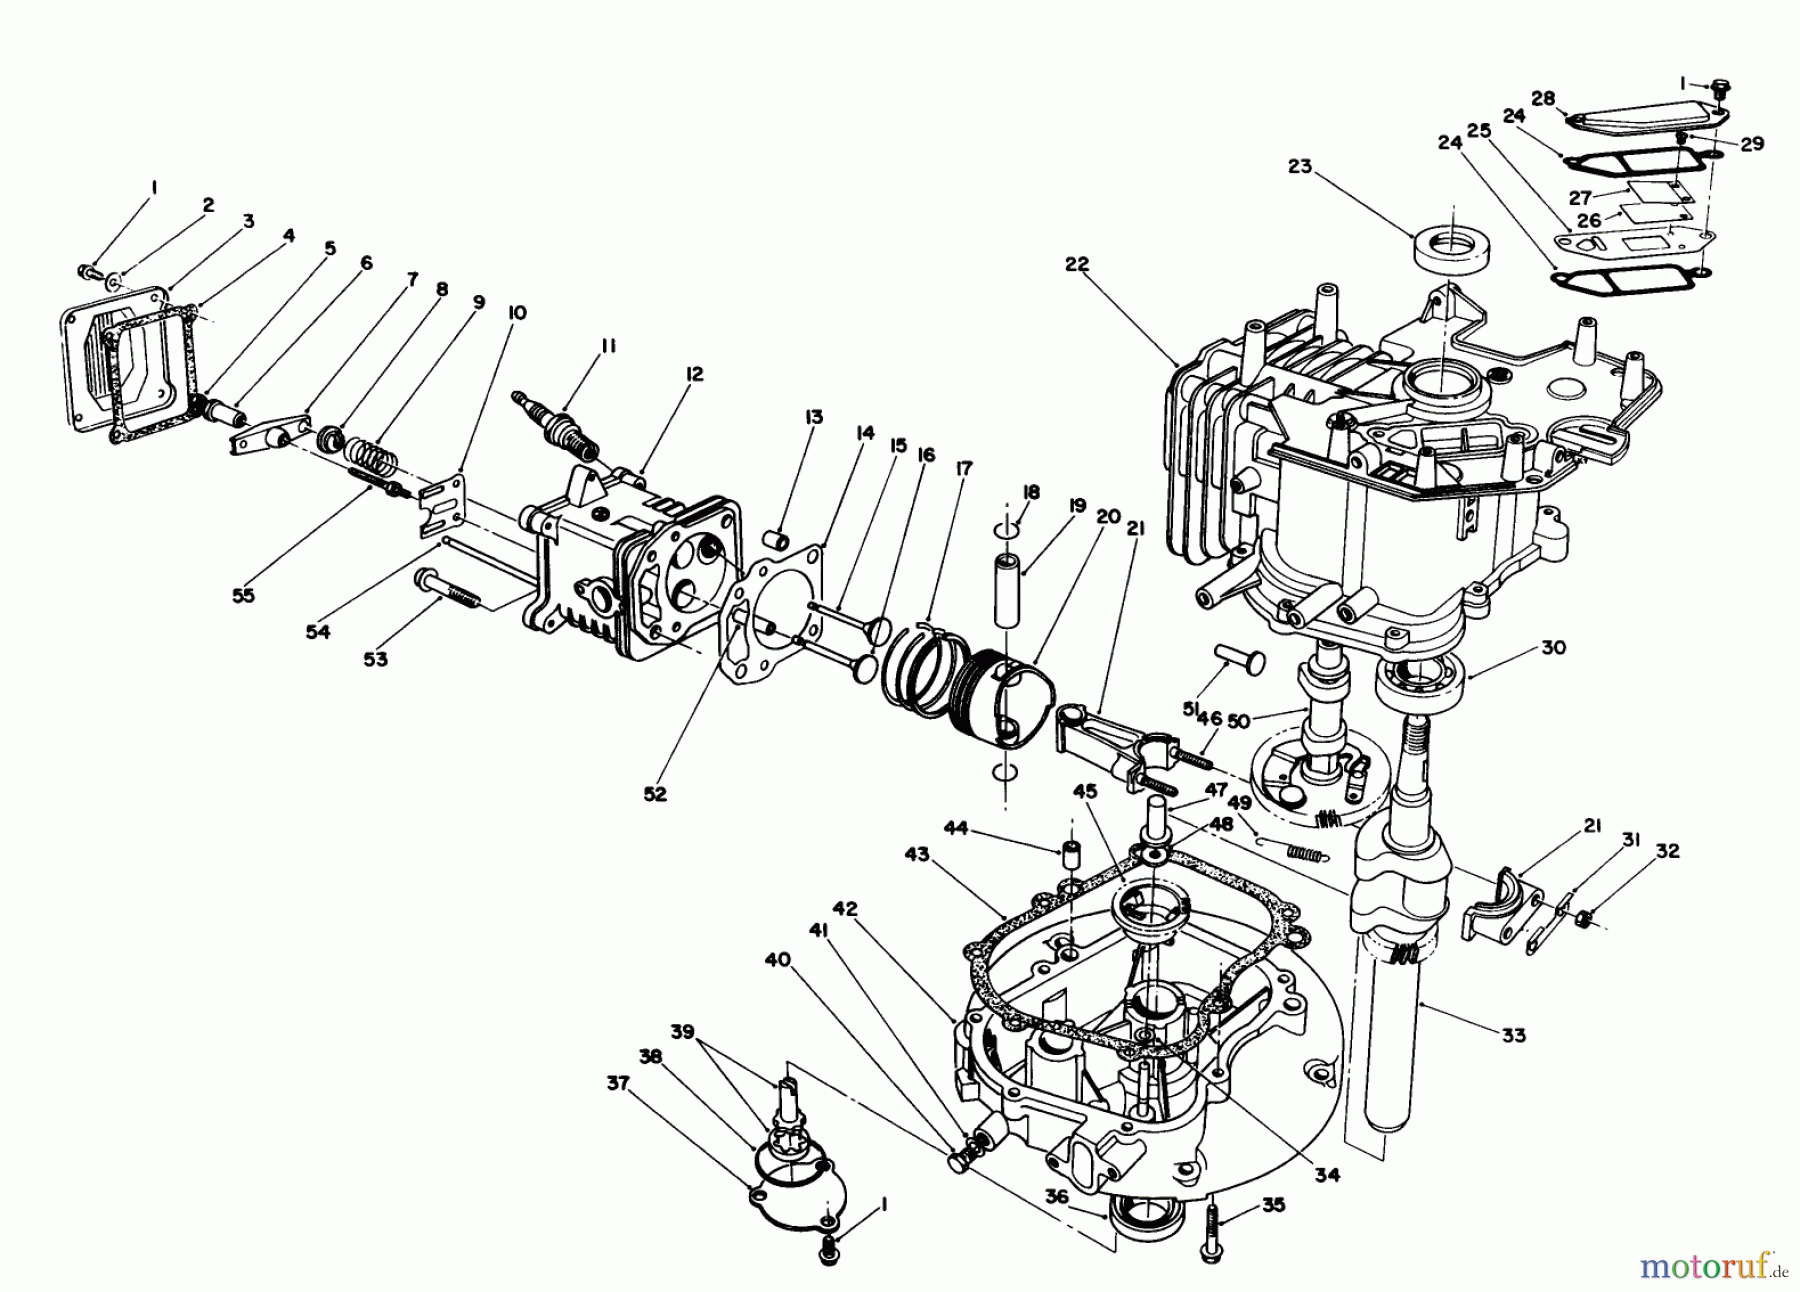  Toro Neu Mowers, Walk-Behind Seite 1 20628C - Toro Lawnmower, 1988 (8000001-8999999) ENGINE ASSEMBLY #2